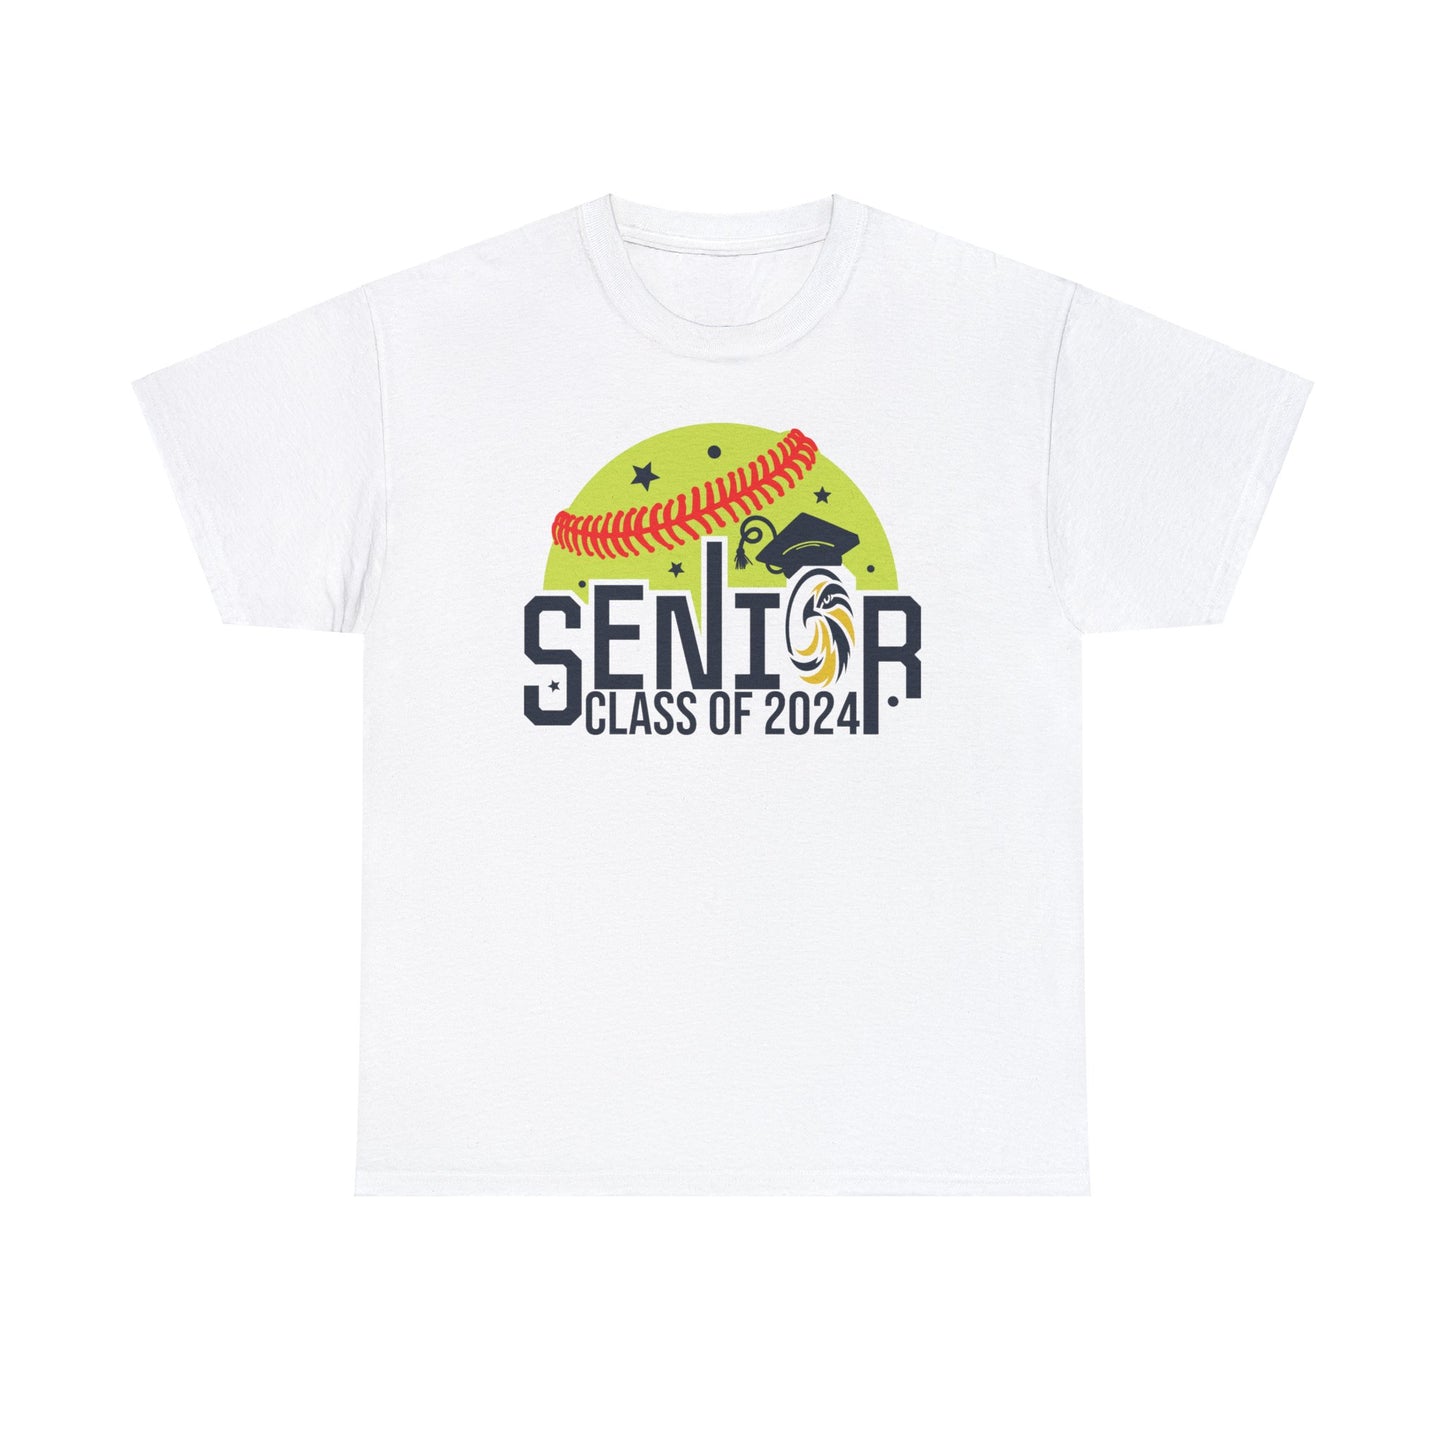 Seniors 2024 Softball - Gildan Unisex Heavy Cotton Tee